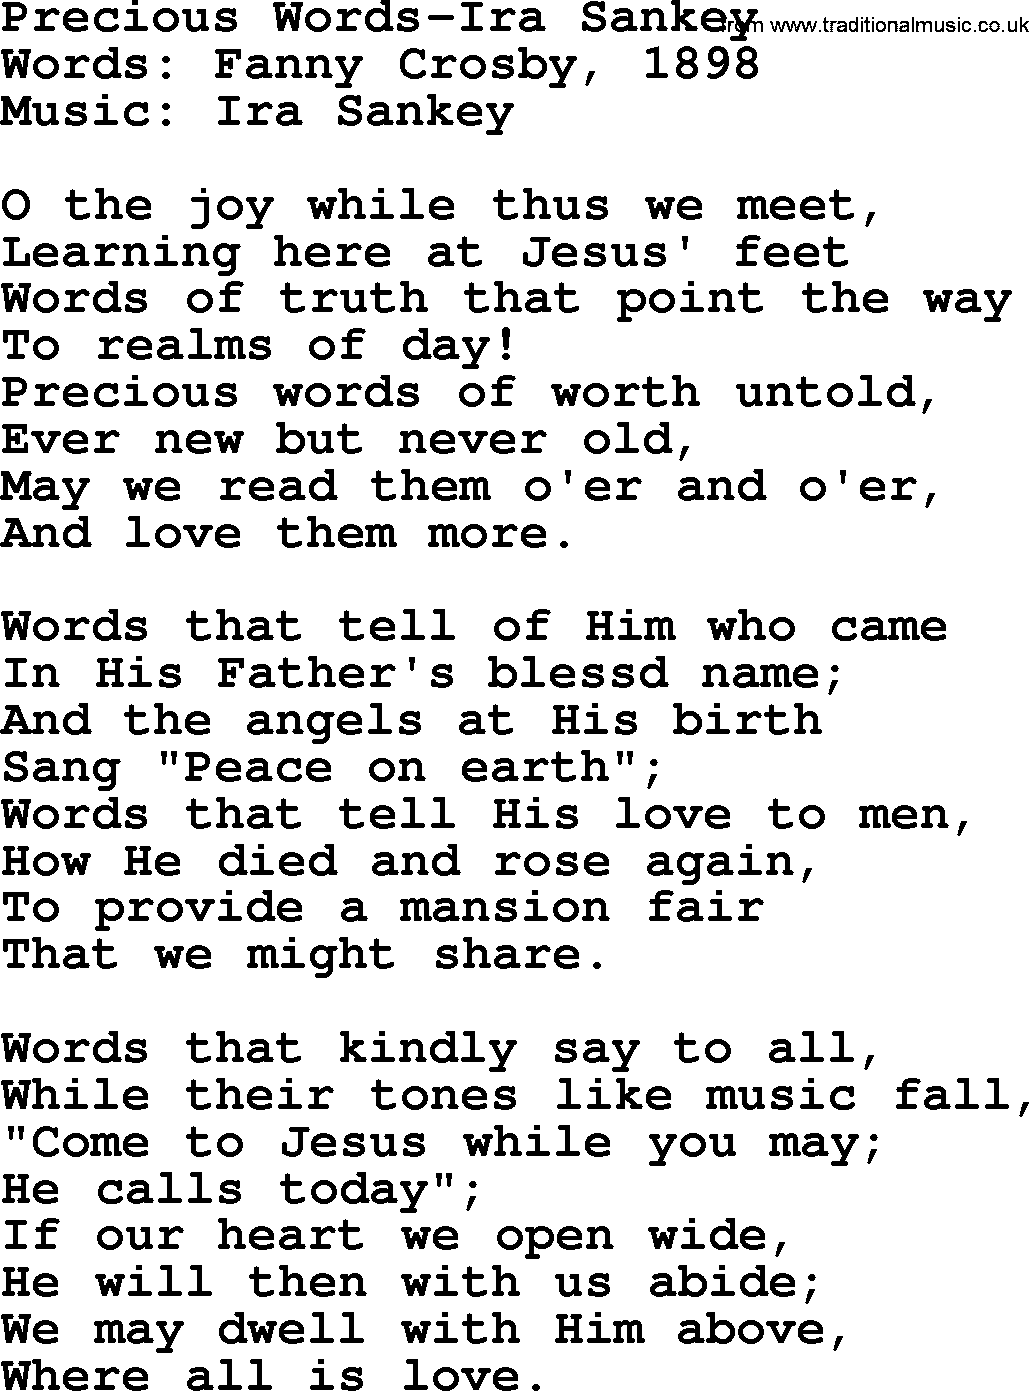 Ira Sankey hymn: Precious Words-Ira Sankey, lyrics